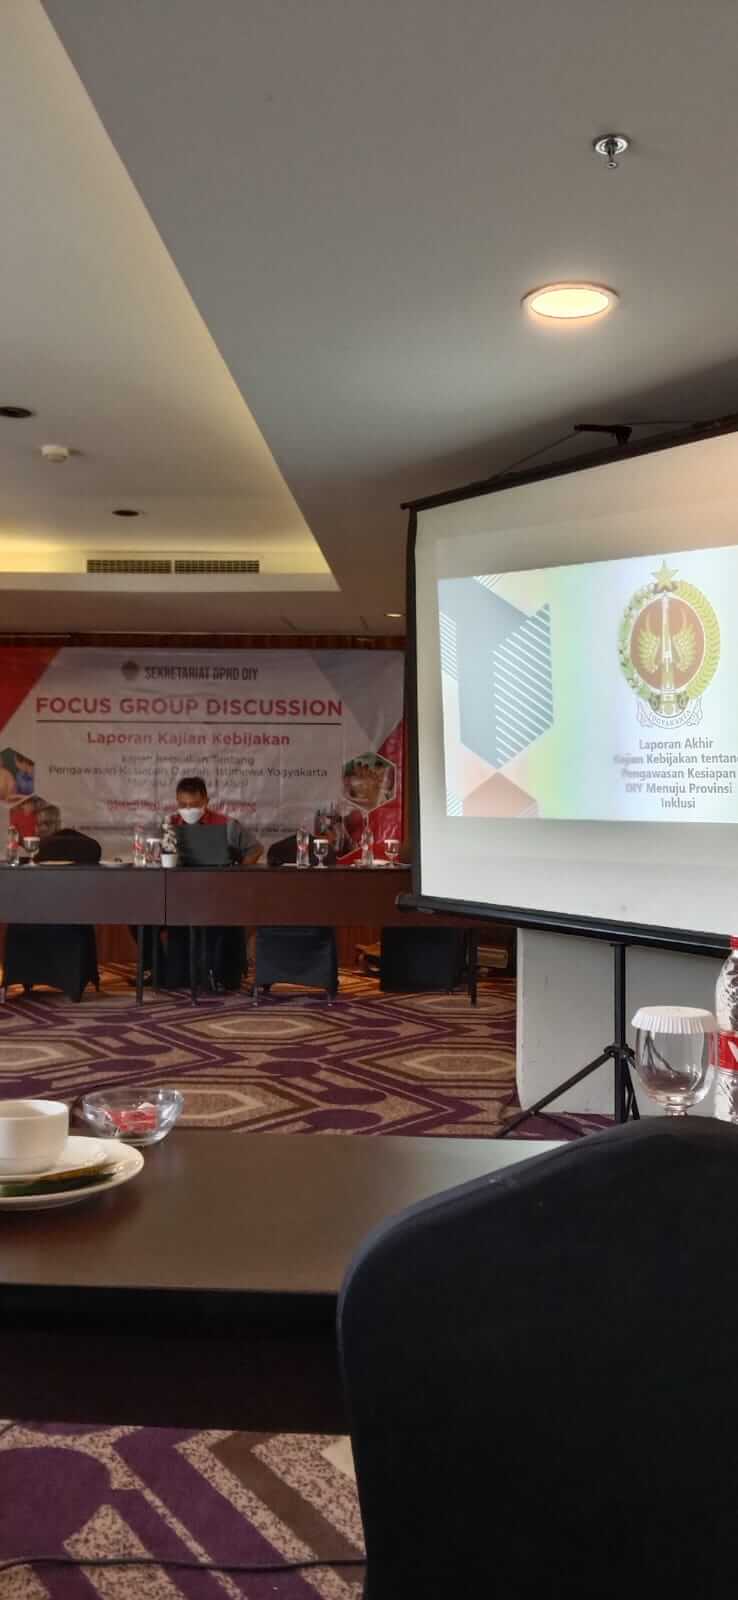 FGD Laporan Kajian Kebijakan Tentang Pengawasan Kesiapan DI Yogyakarta Menuju Provinsi Inklusi